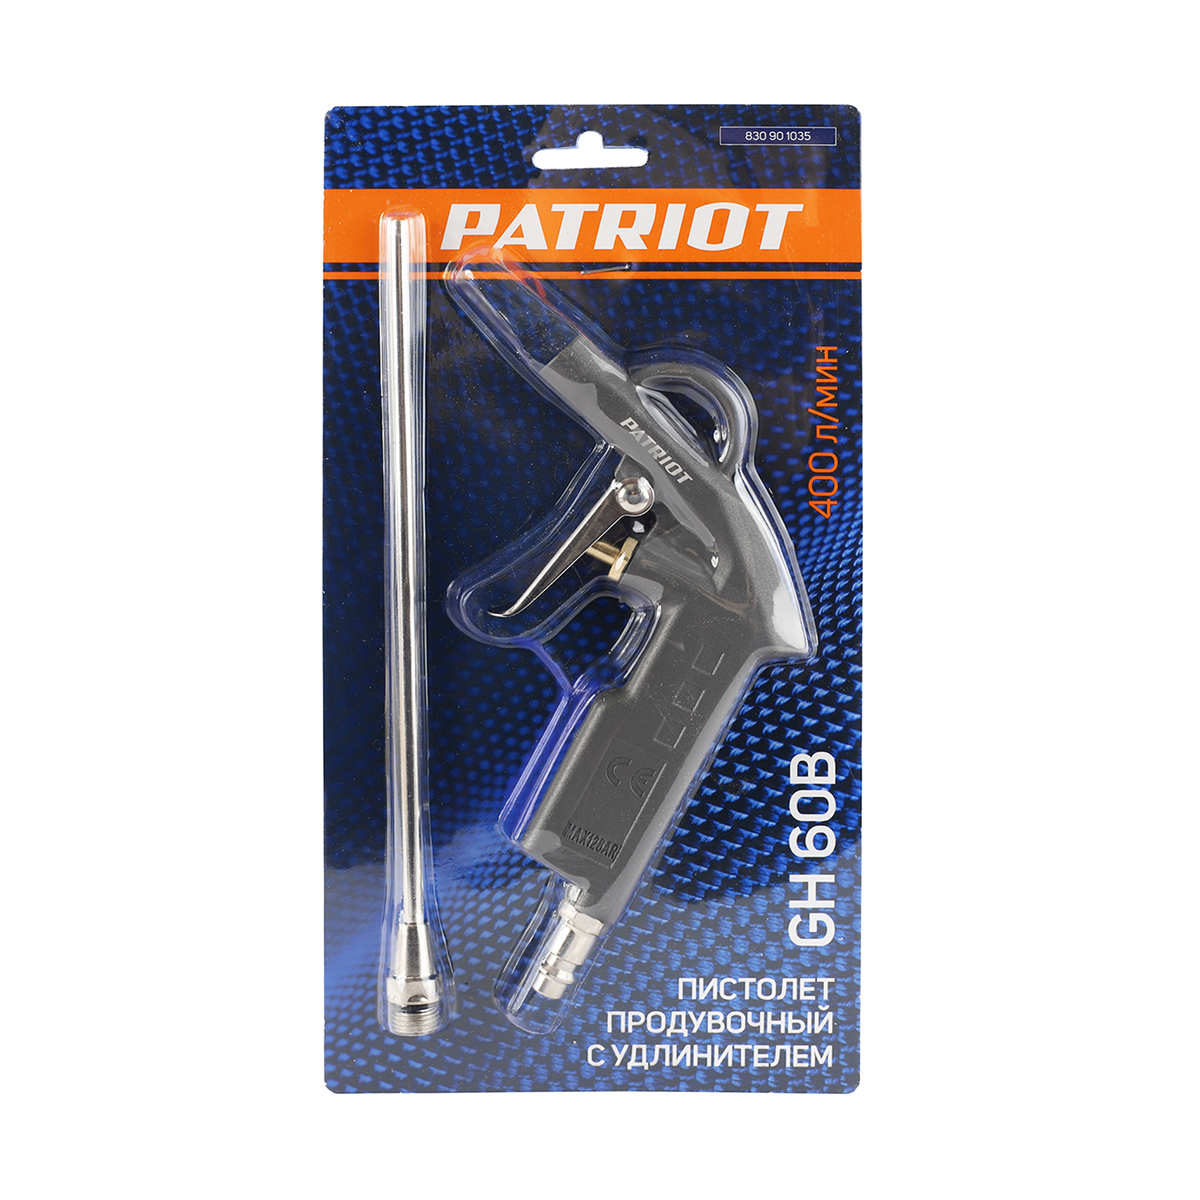 Пистолет продувочный gh 60b (1/40) "patriot" 830901035